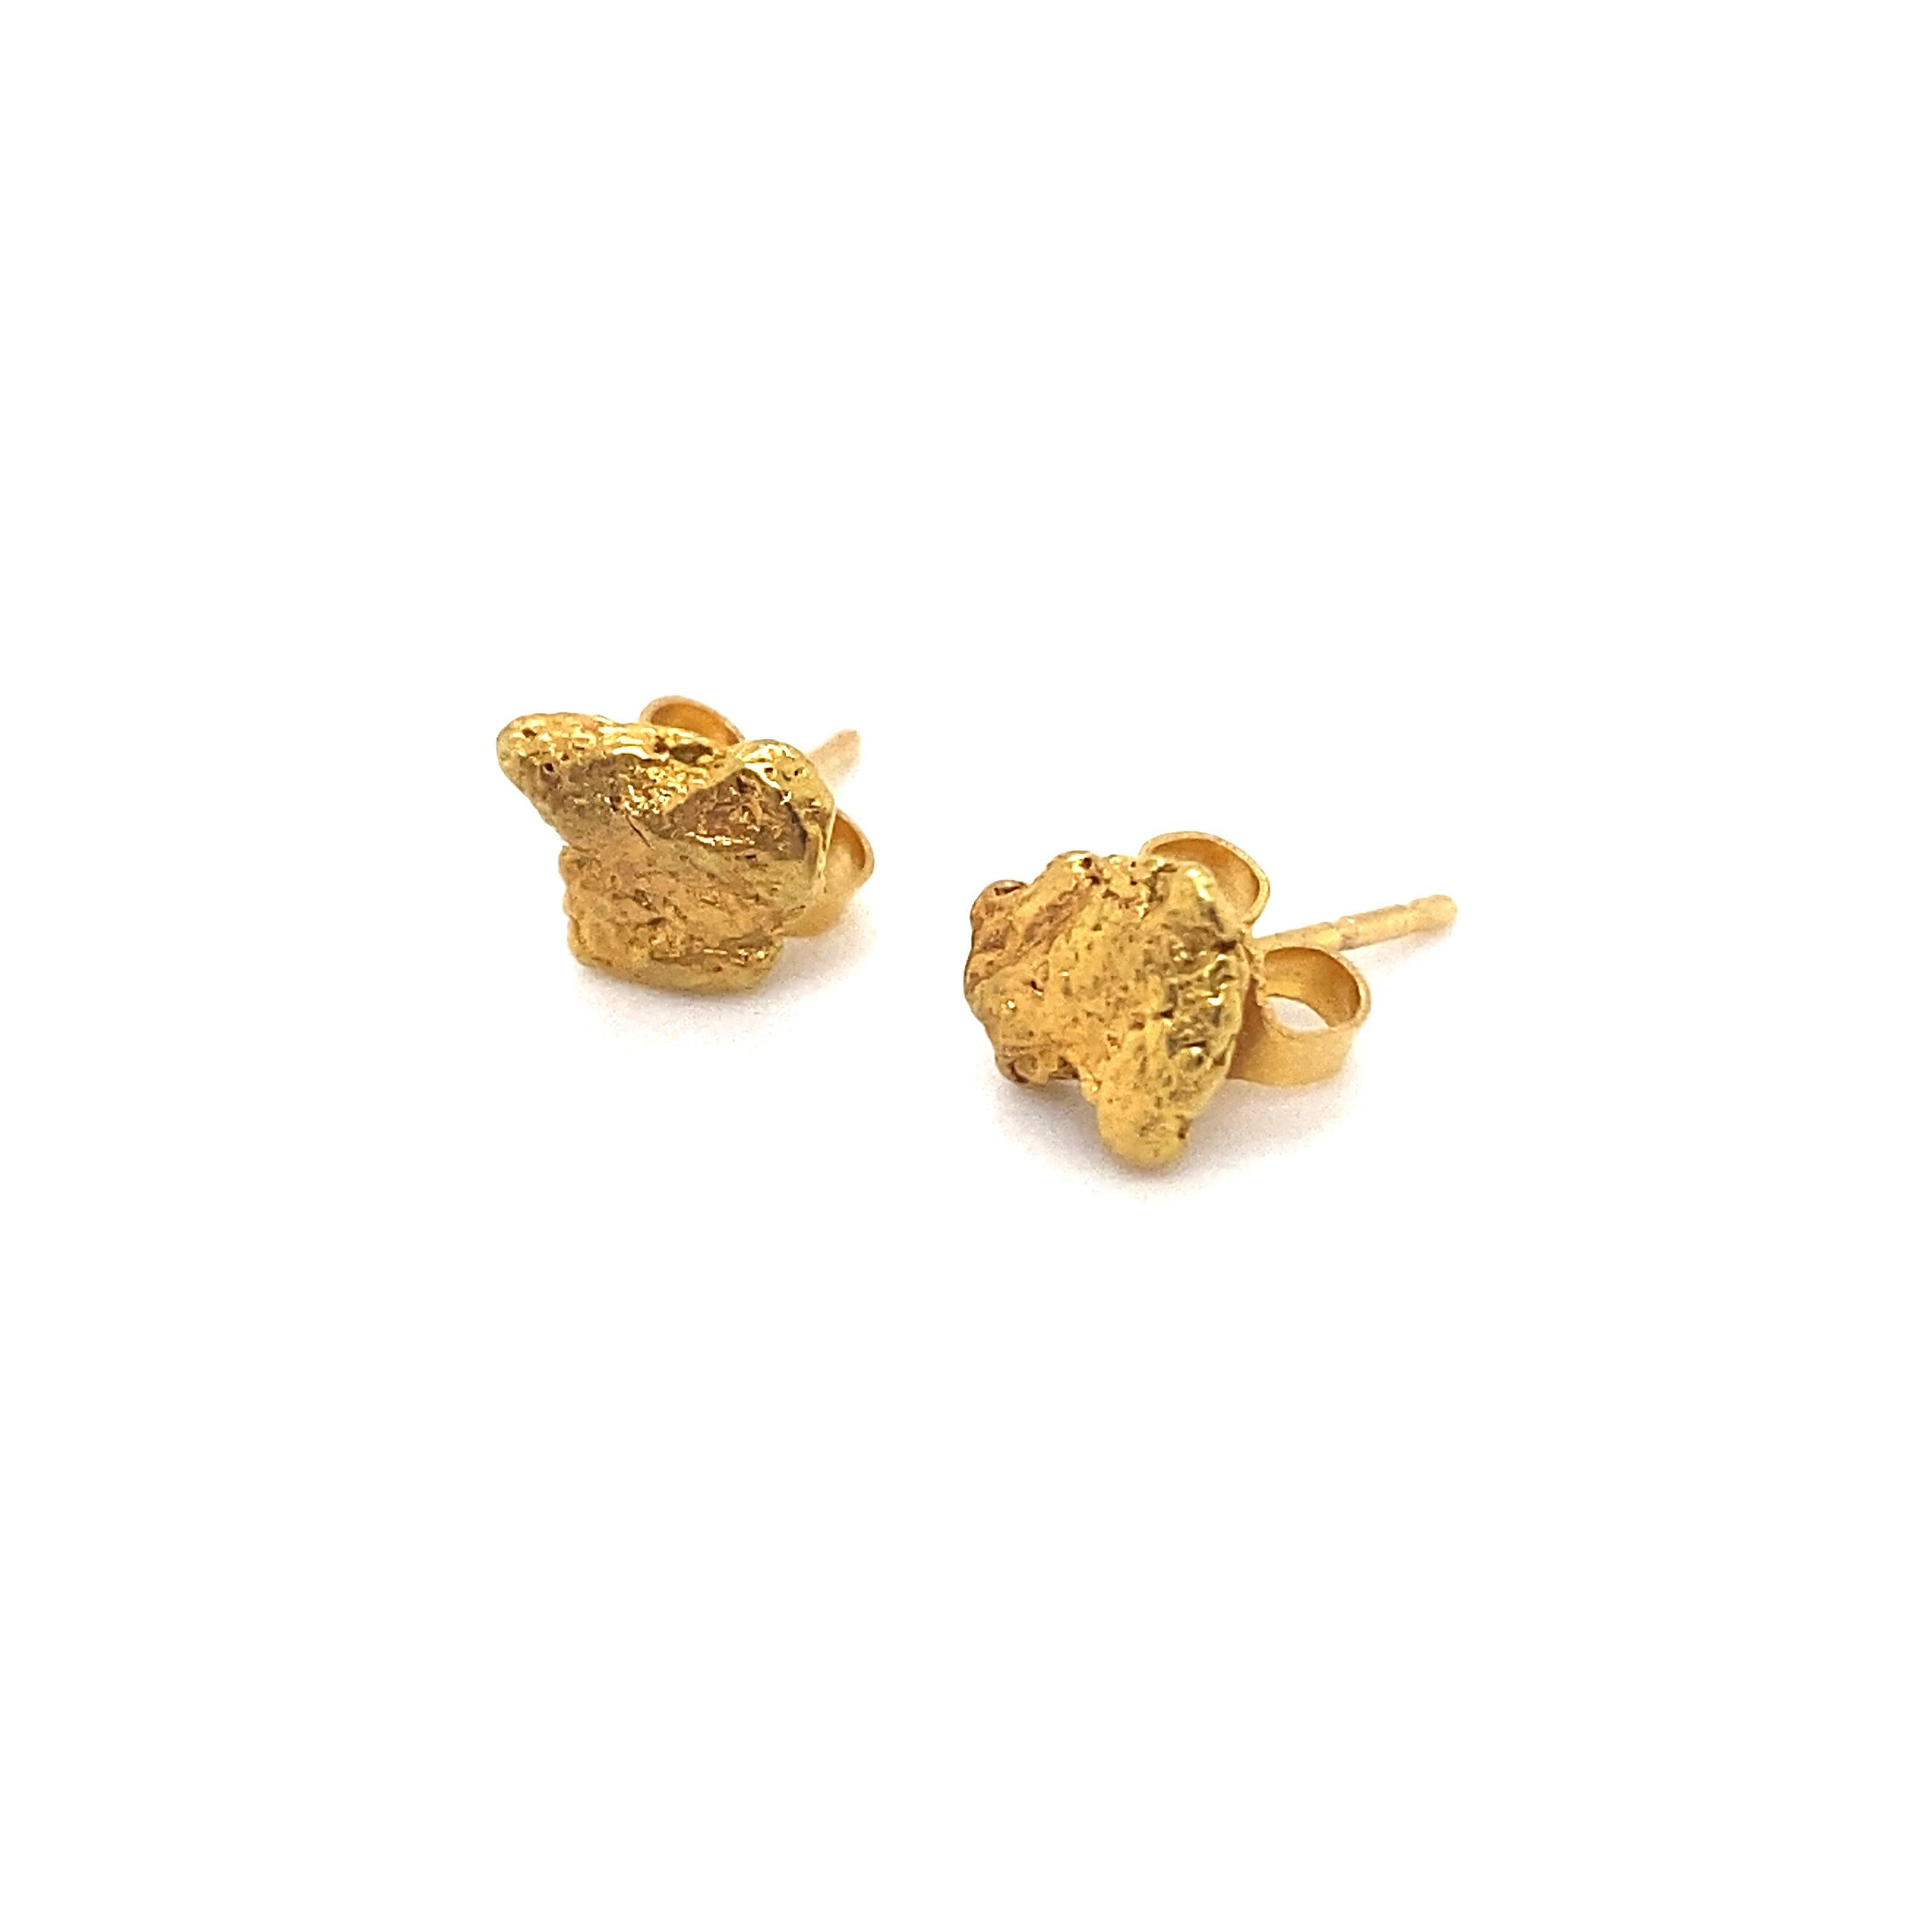 gold nugget earrings 24k